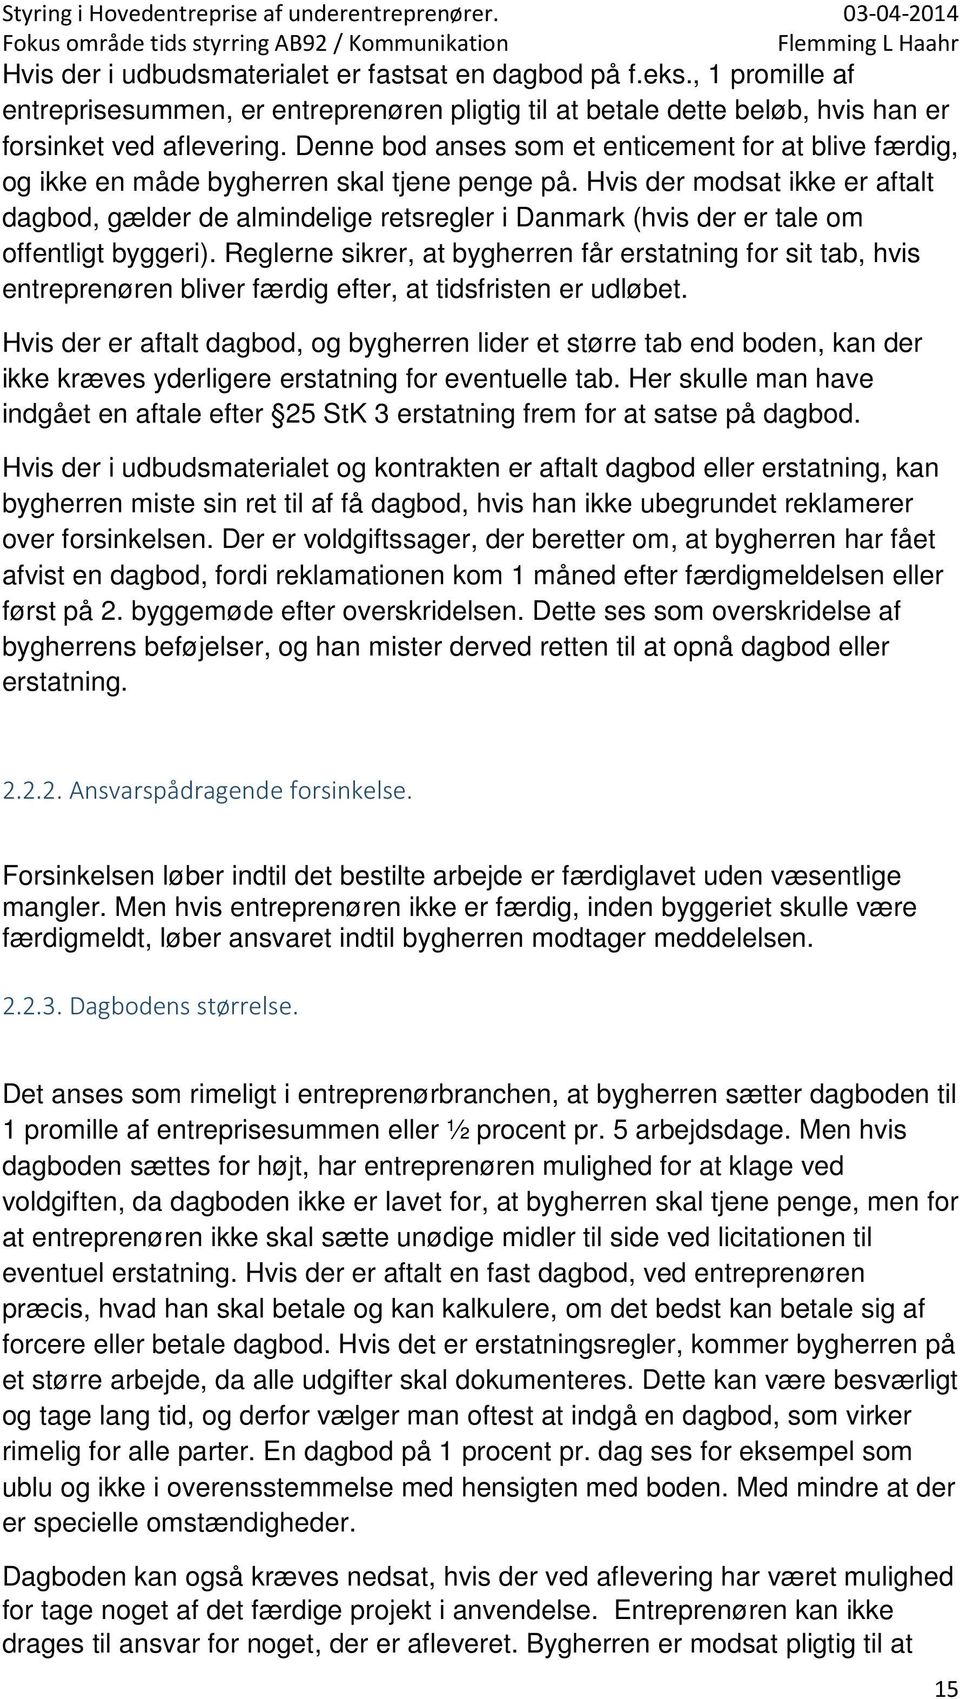 Hvis der modsat ikke er aftalt dagbod, gælder de almindelige retsregler i Danmark (hvis der er tale om offentligt byggeri).